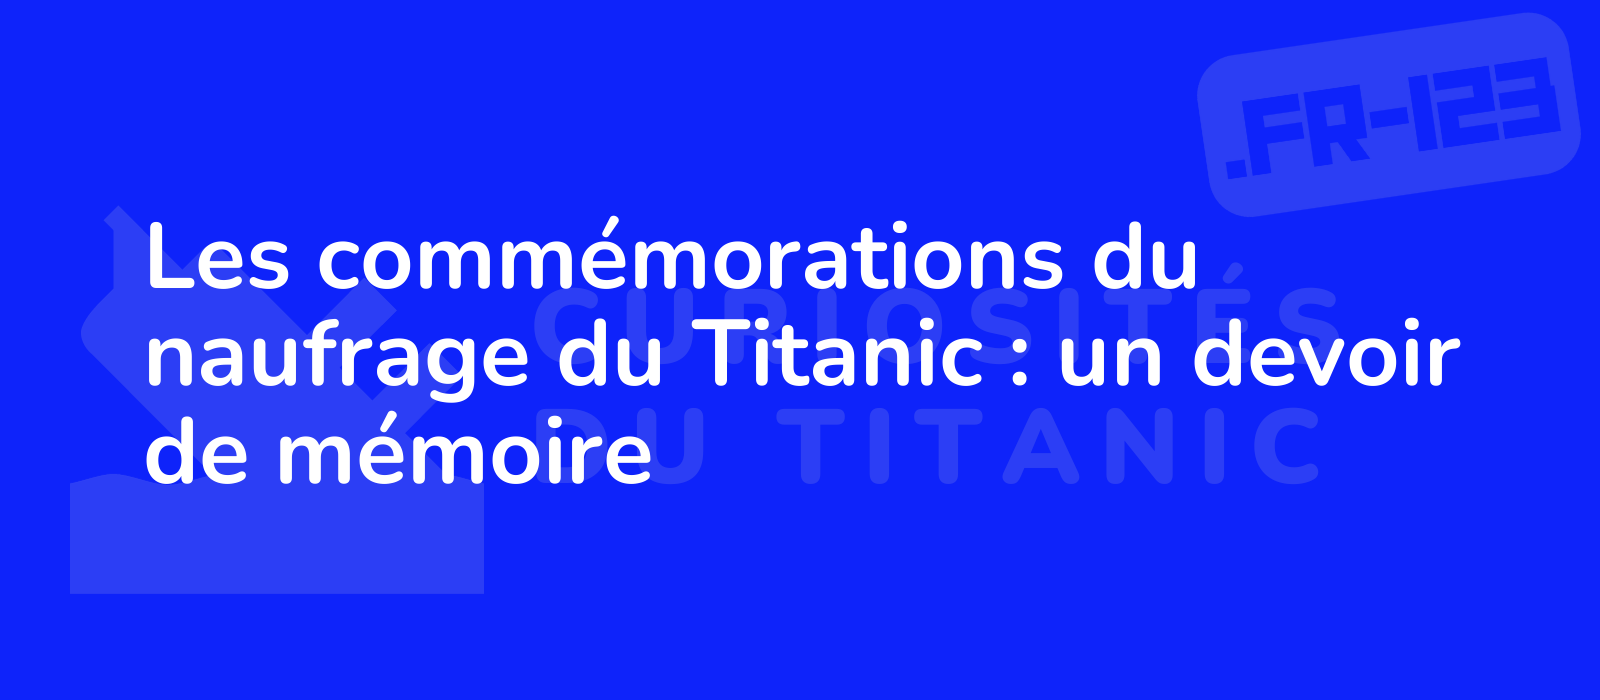 Les commémorations du naufrage du Titanic : un devoir de mémoire